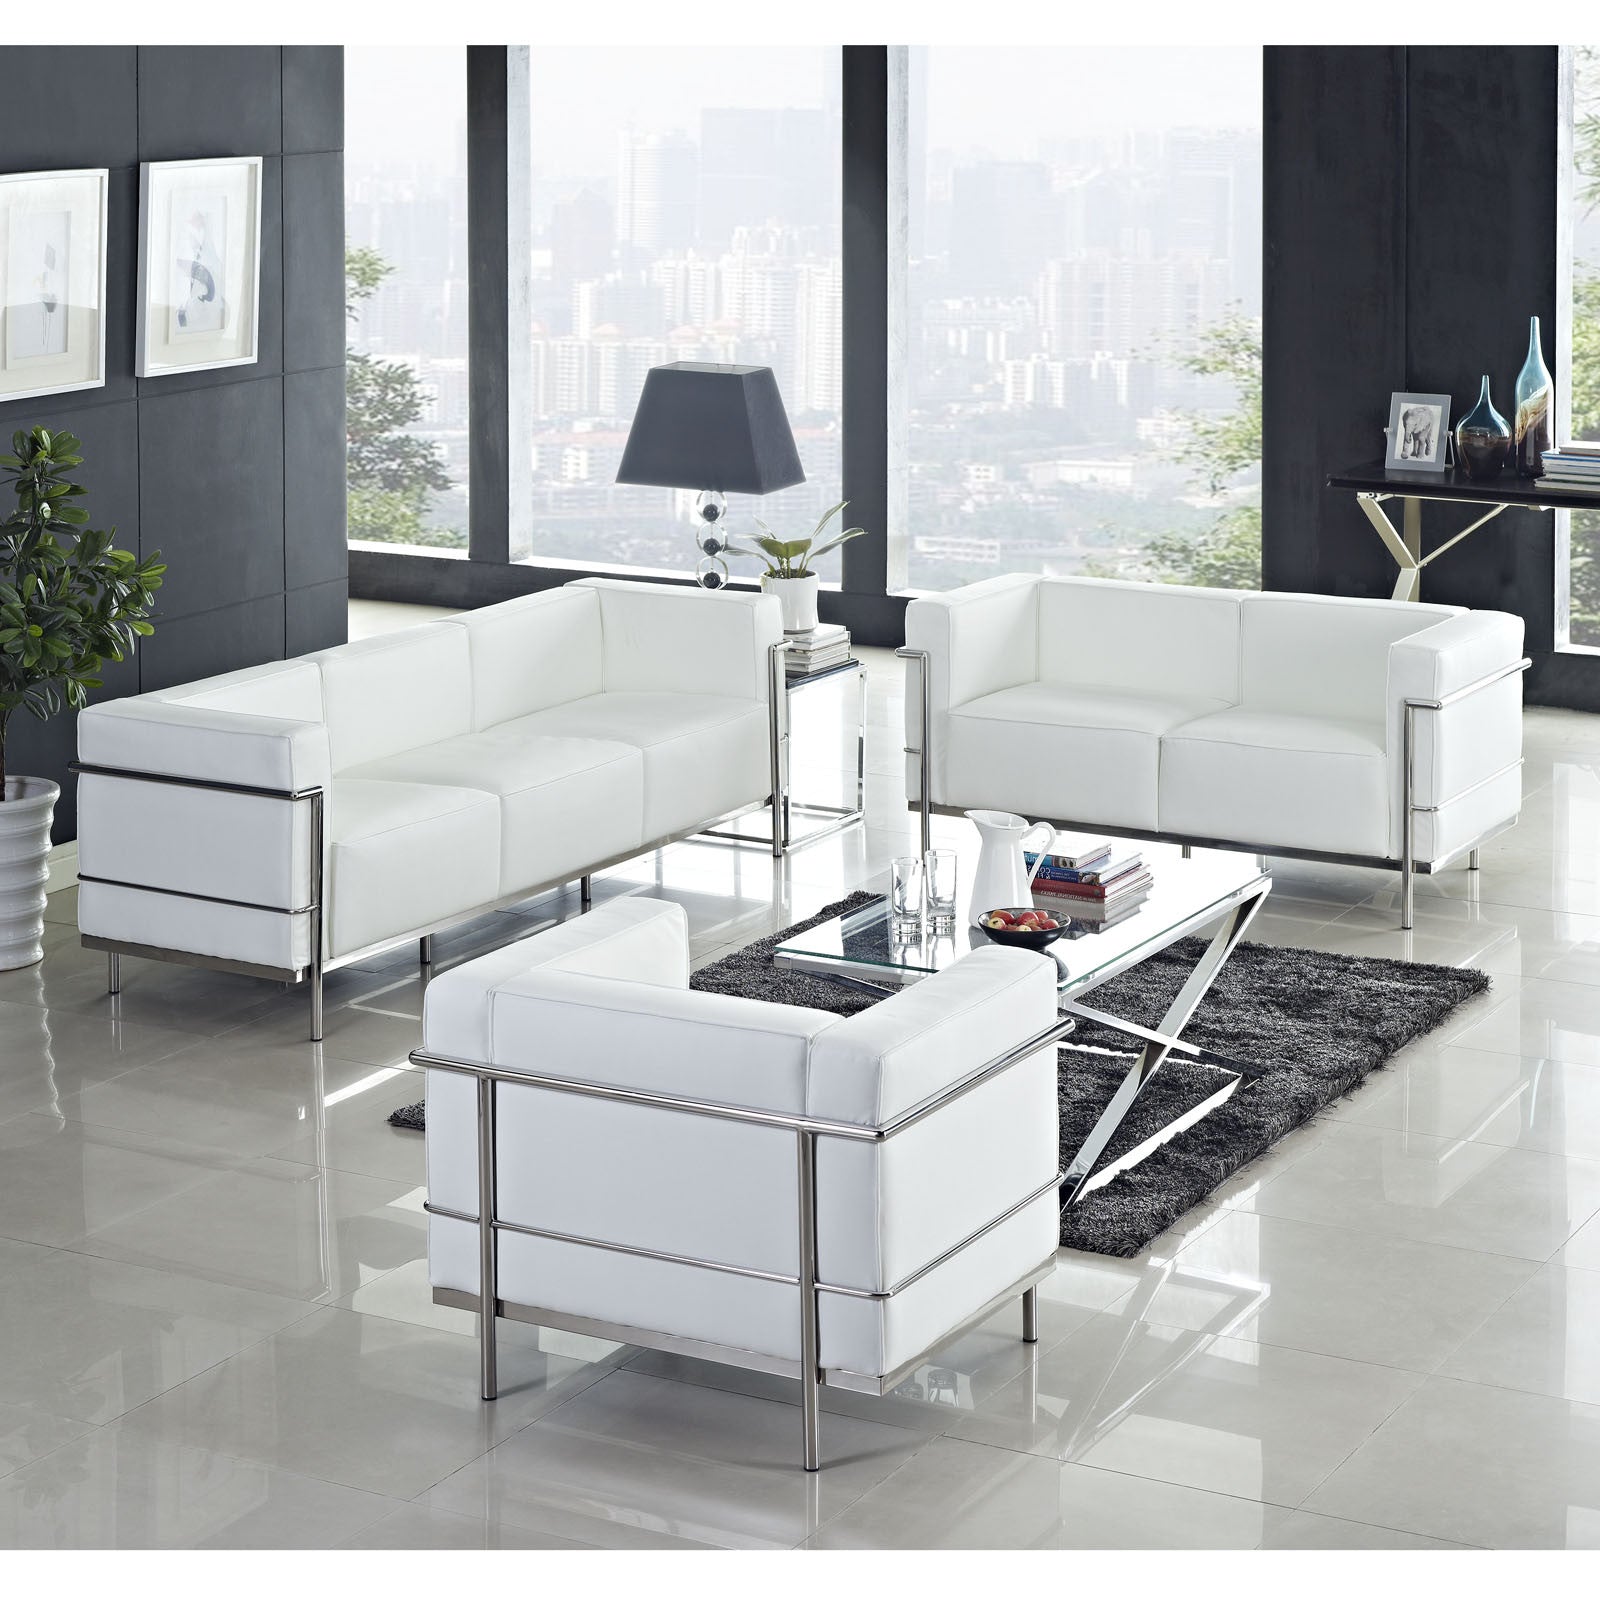 Modway Furniture Charles Grande Loveseat EEI-566-Minimal & Modern